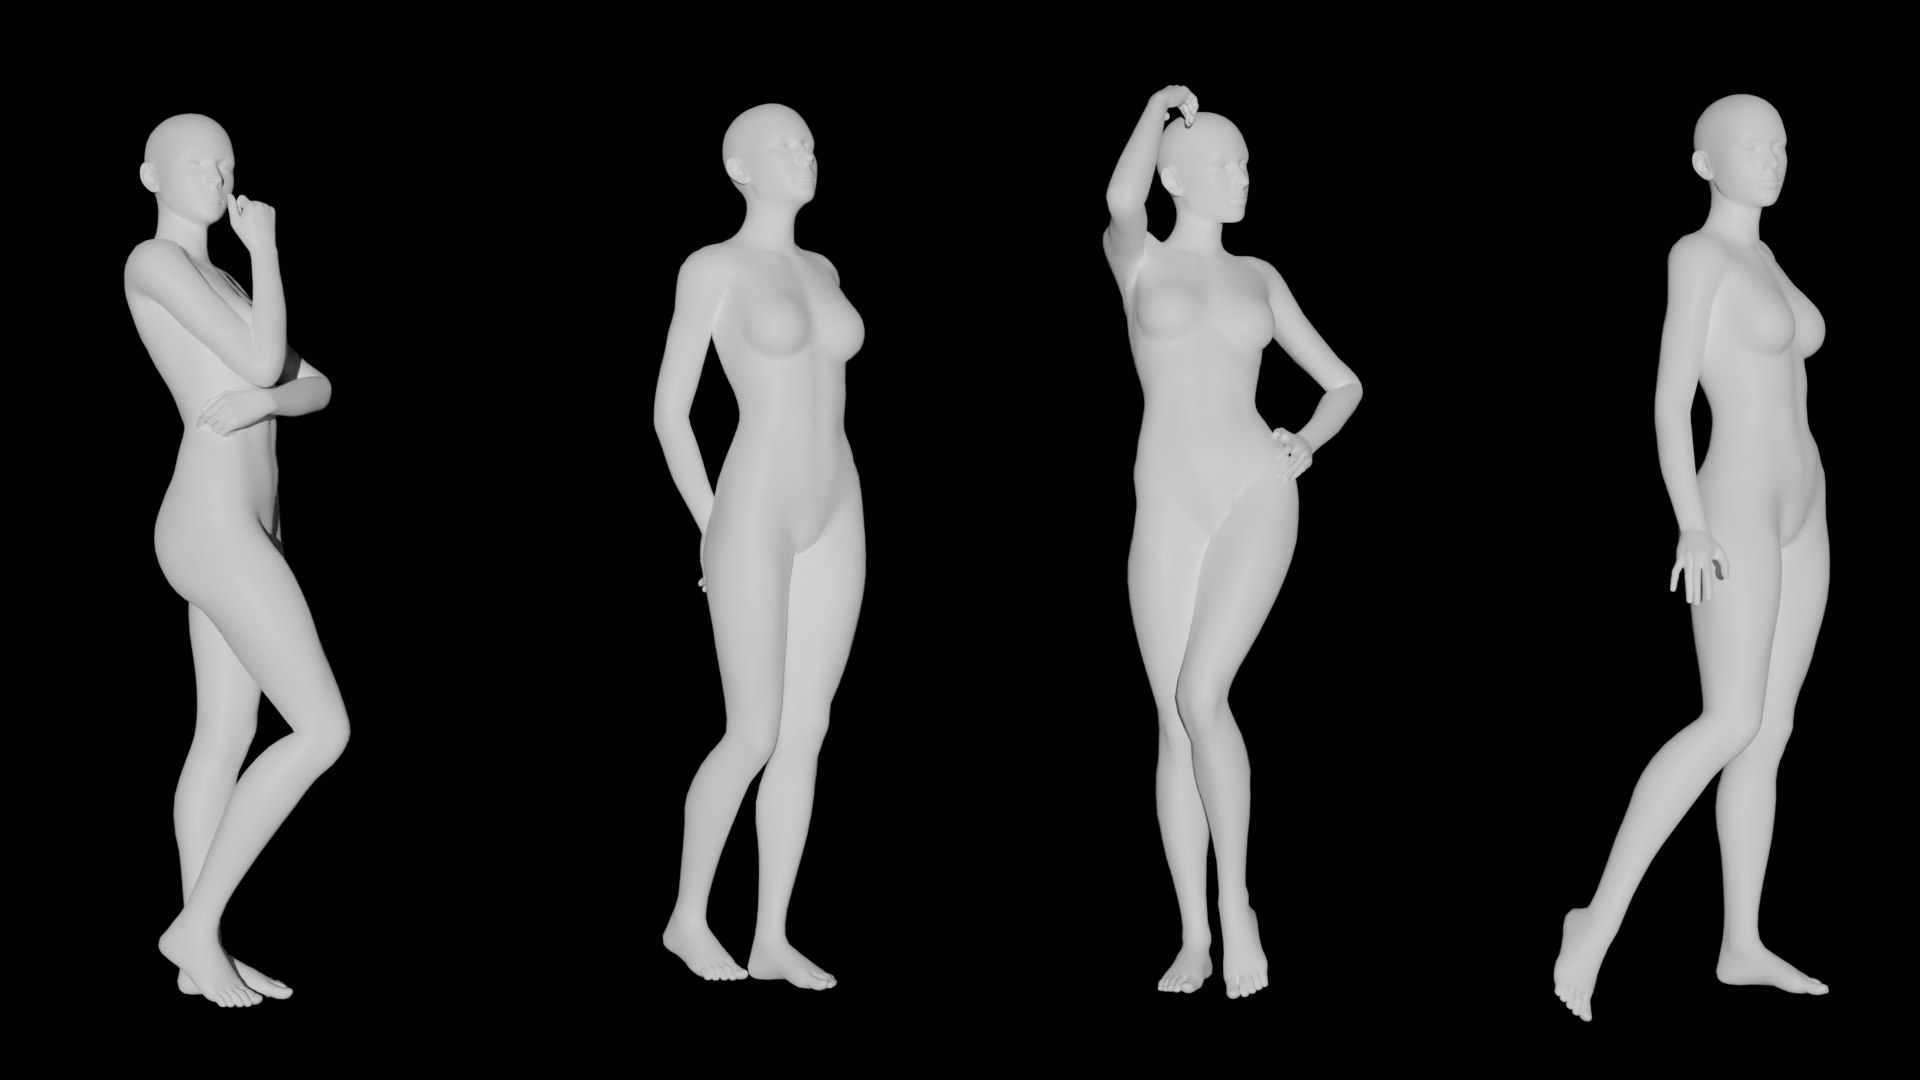 Female mannequin head white 3D - TurboSquid 1297013